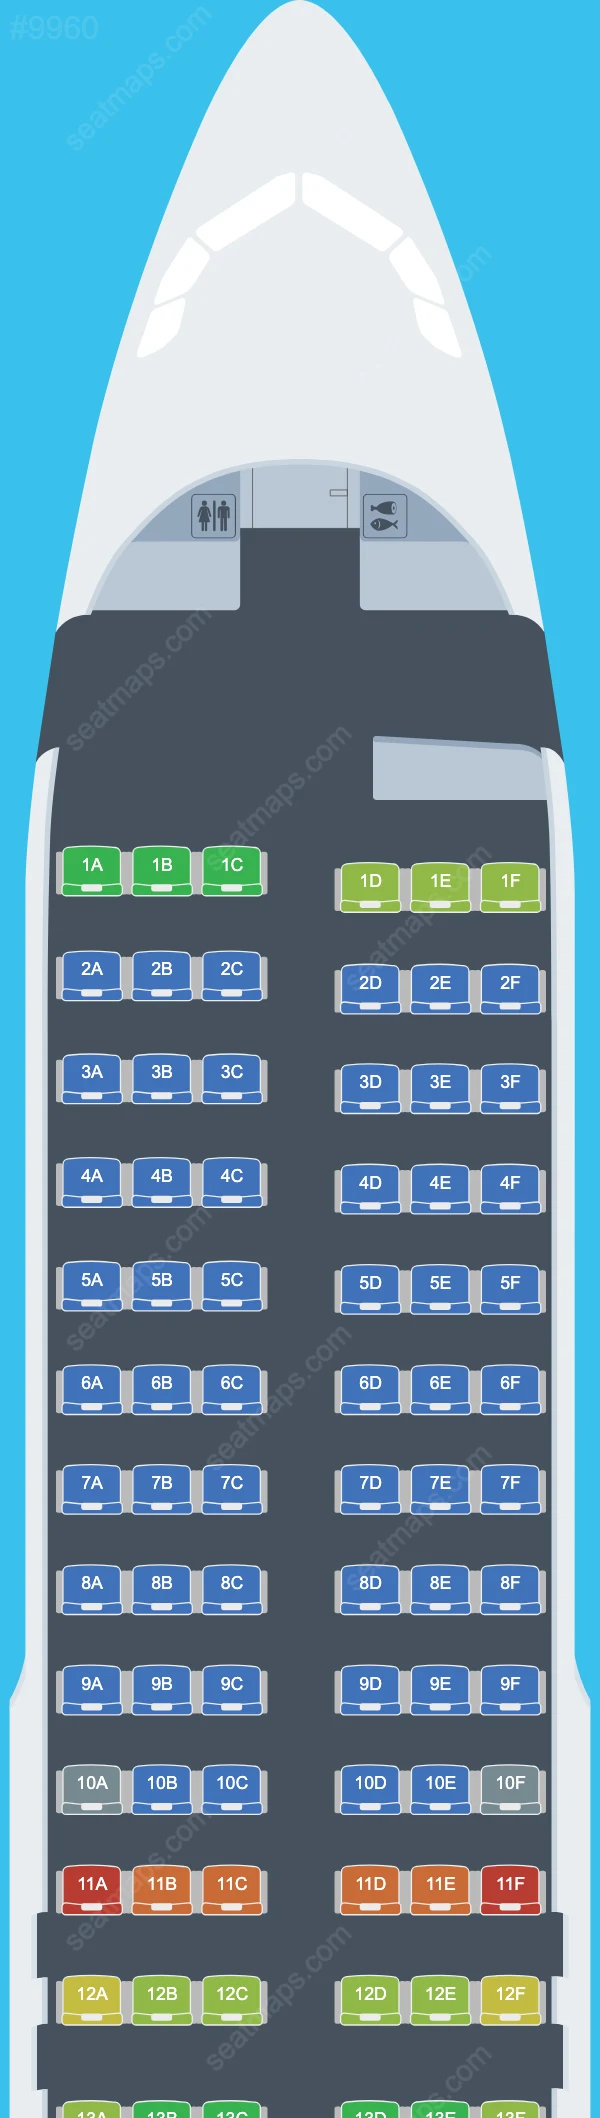 Qantaslink Airbus A320 Plan de Salle A320-200 V.1